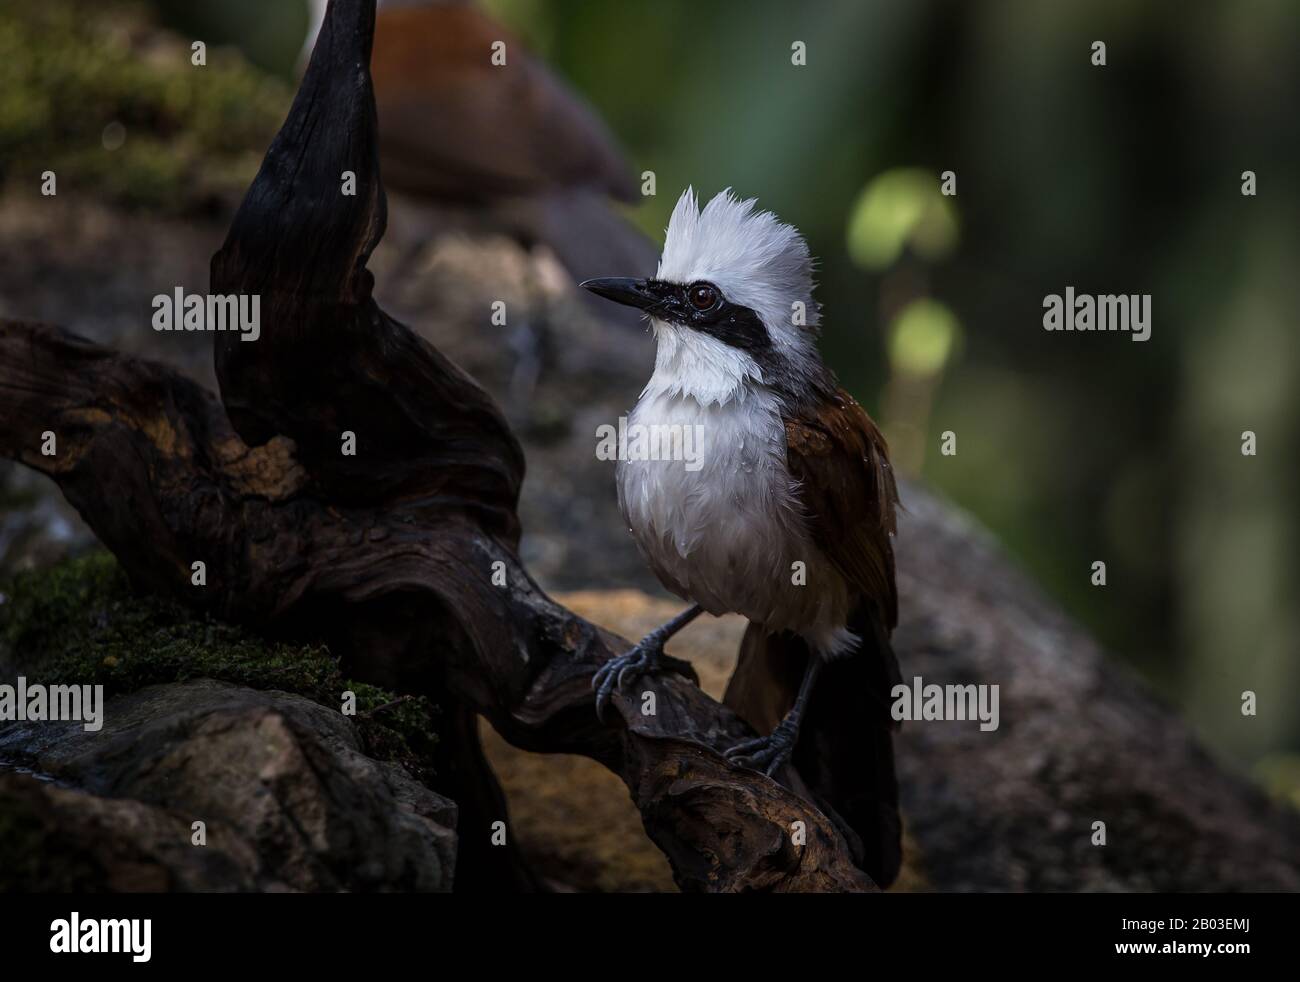 Fotografare uccelli in natura artistica (Thrush calmante bianco) Foto Stock